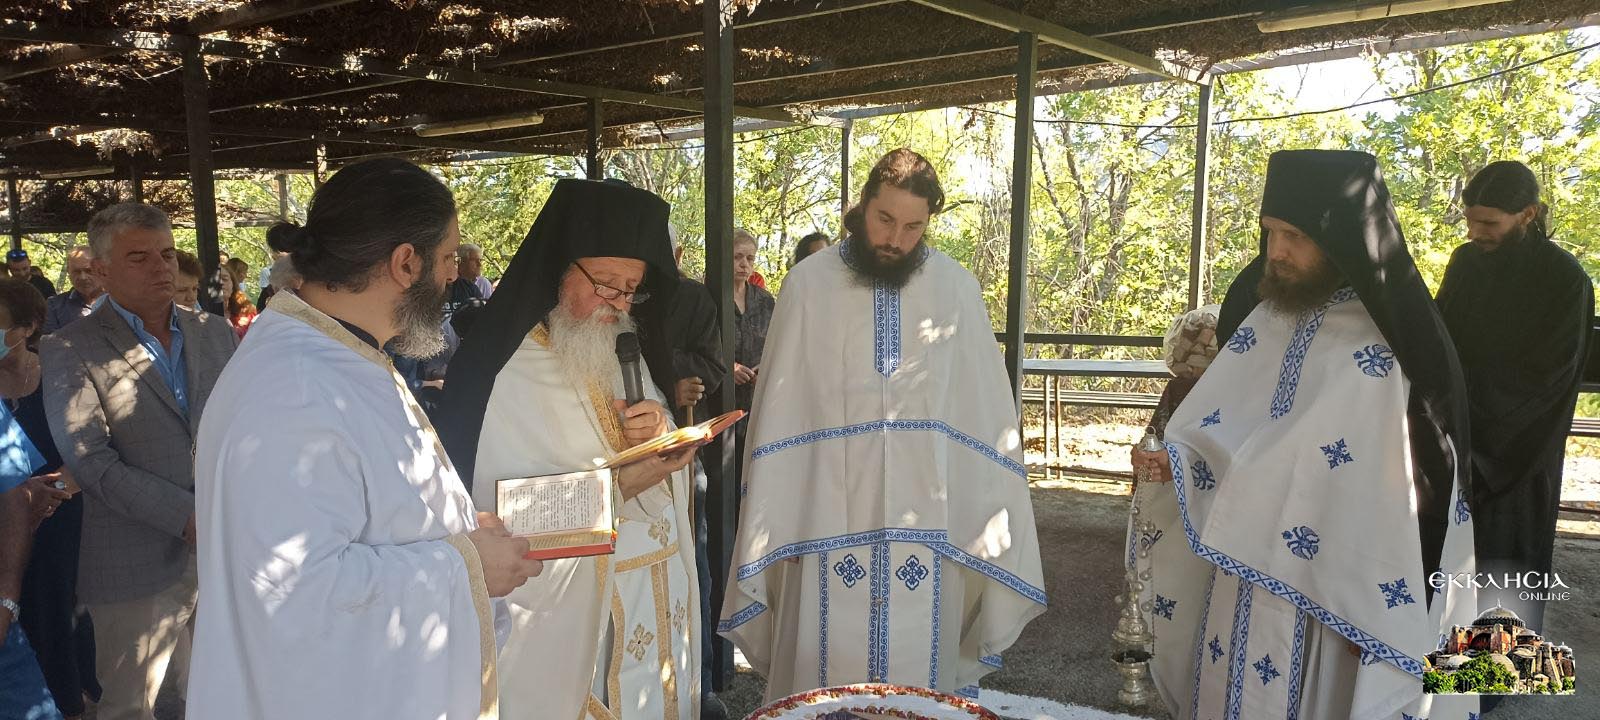 Εόρτασε η Μονή του αγίου Νικάνορος στην Κόνιτσα 2022